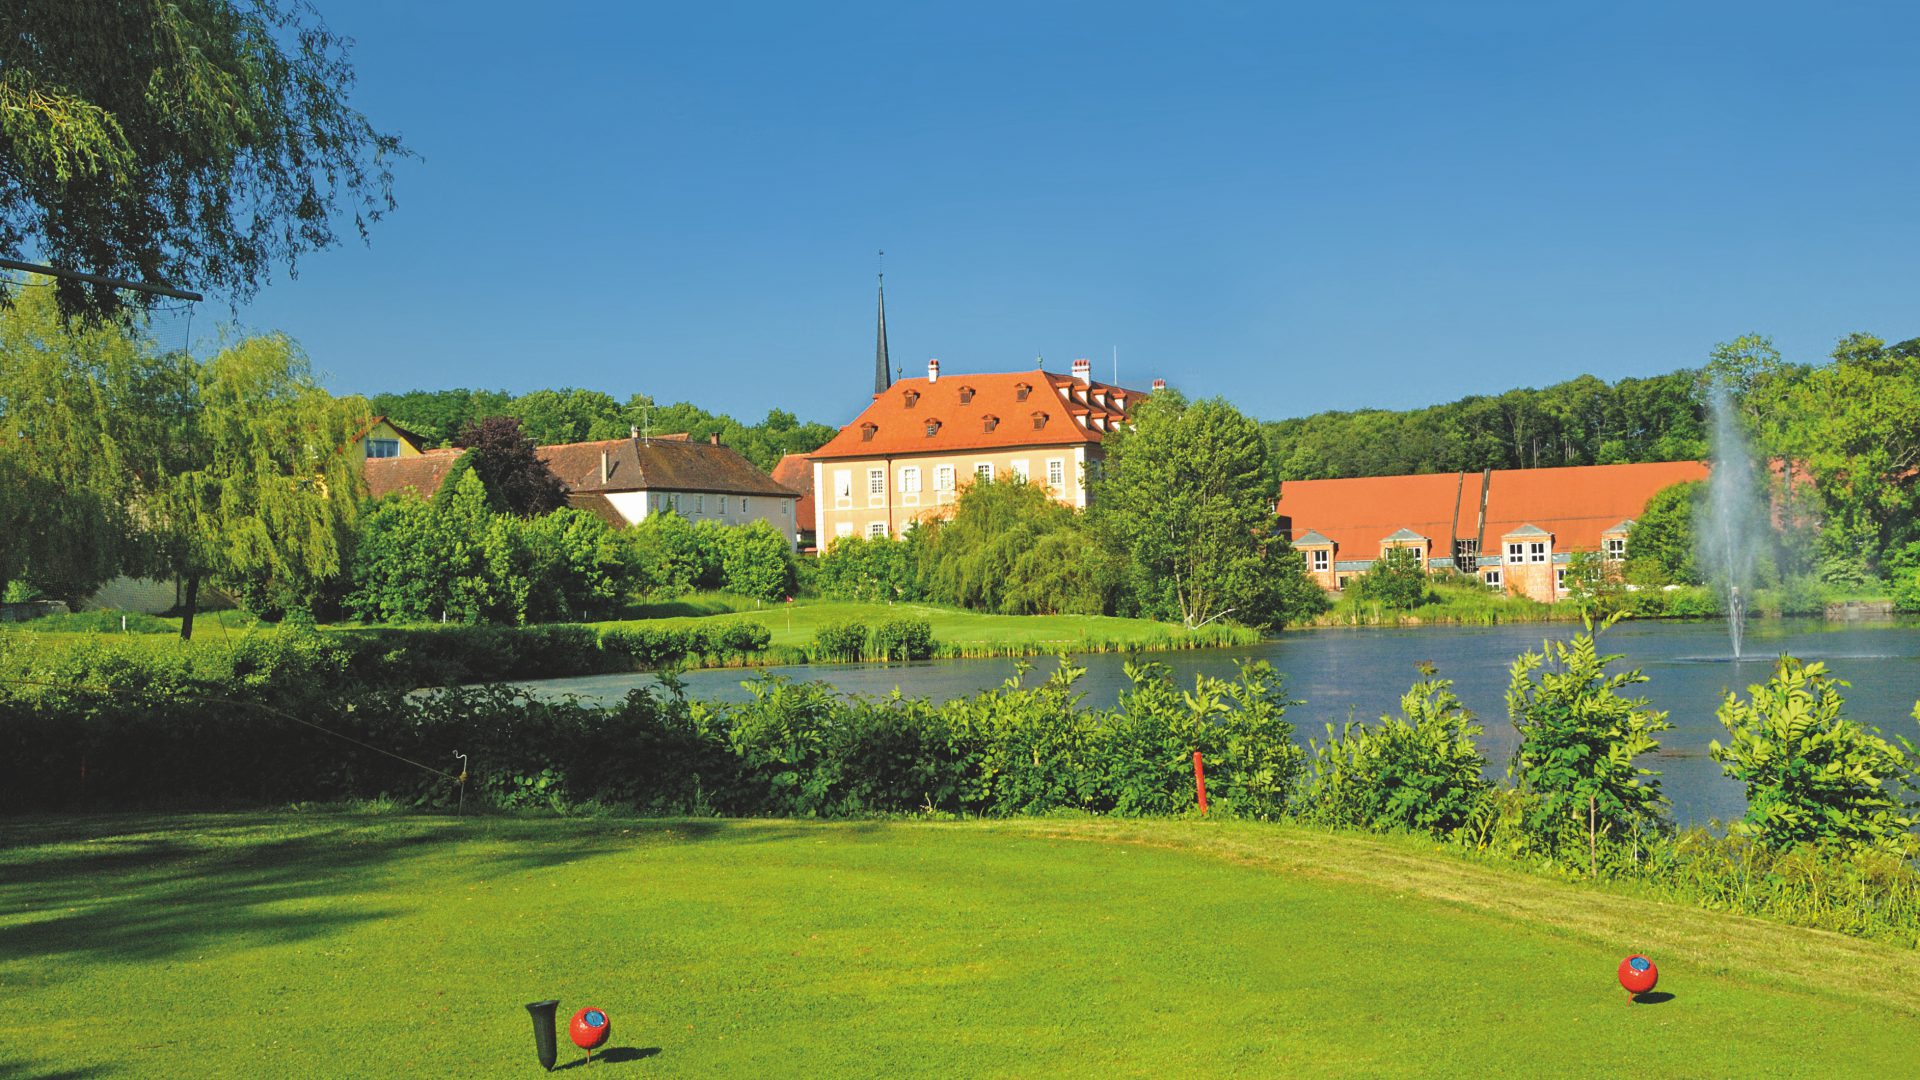 Golfclub Schloss Reichmannsdorf